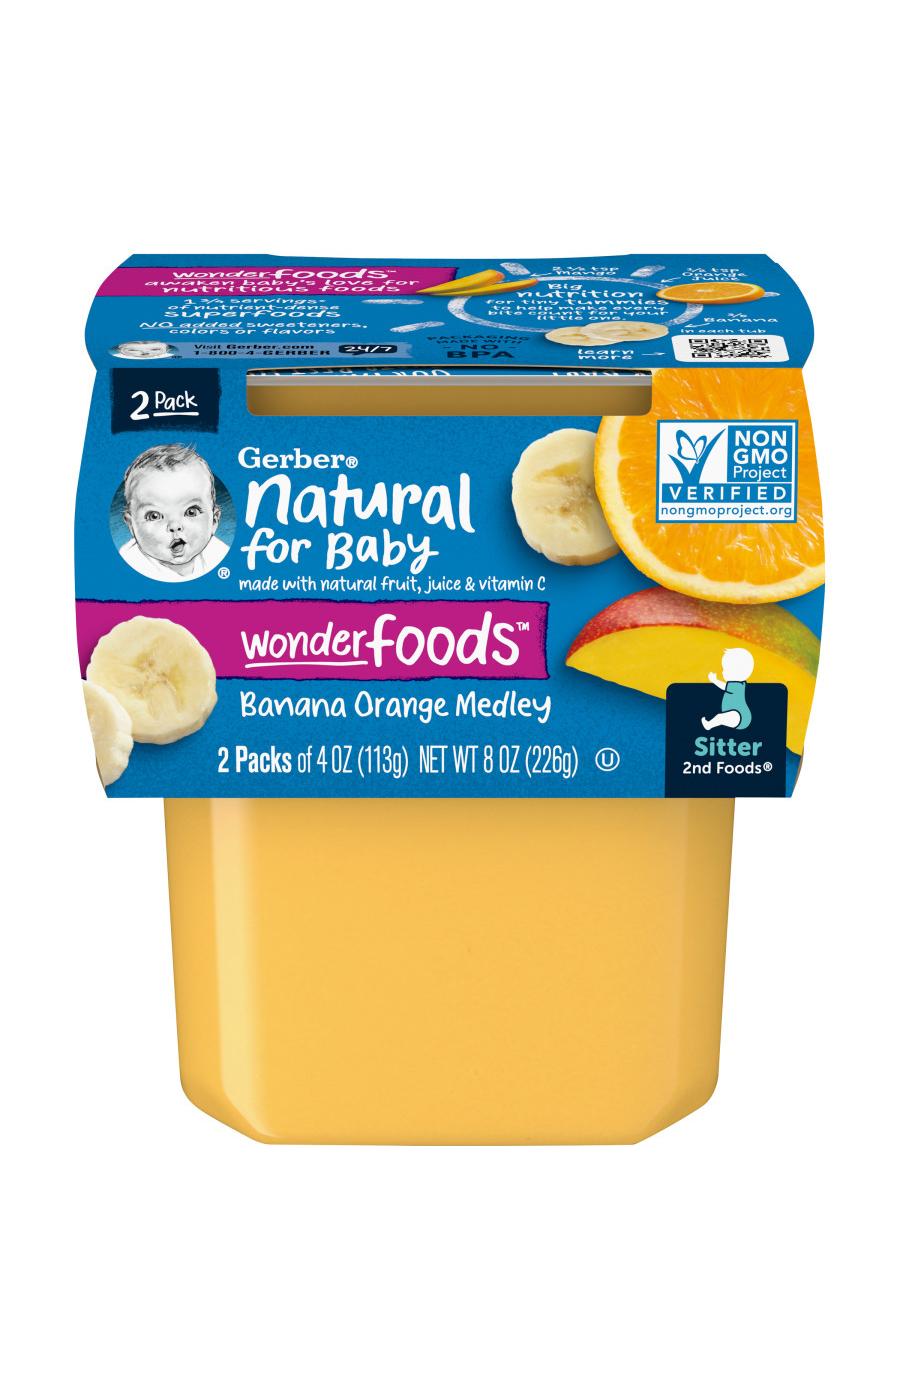 Gerber Natural for Baby WonderFoods 2nd Foods - Banana & Orange Medley; image 1 of 8